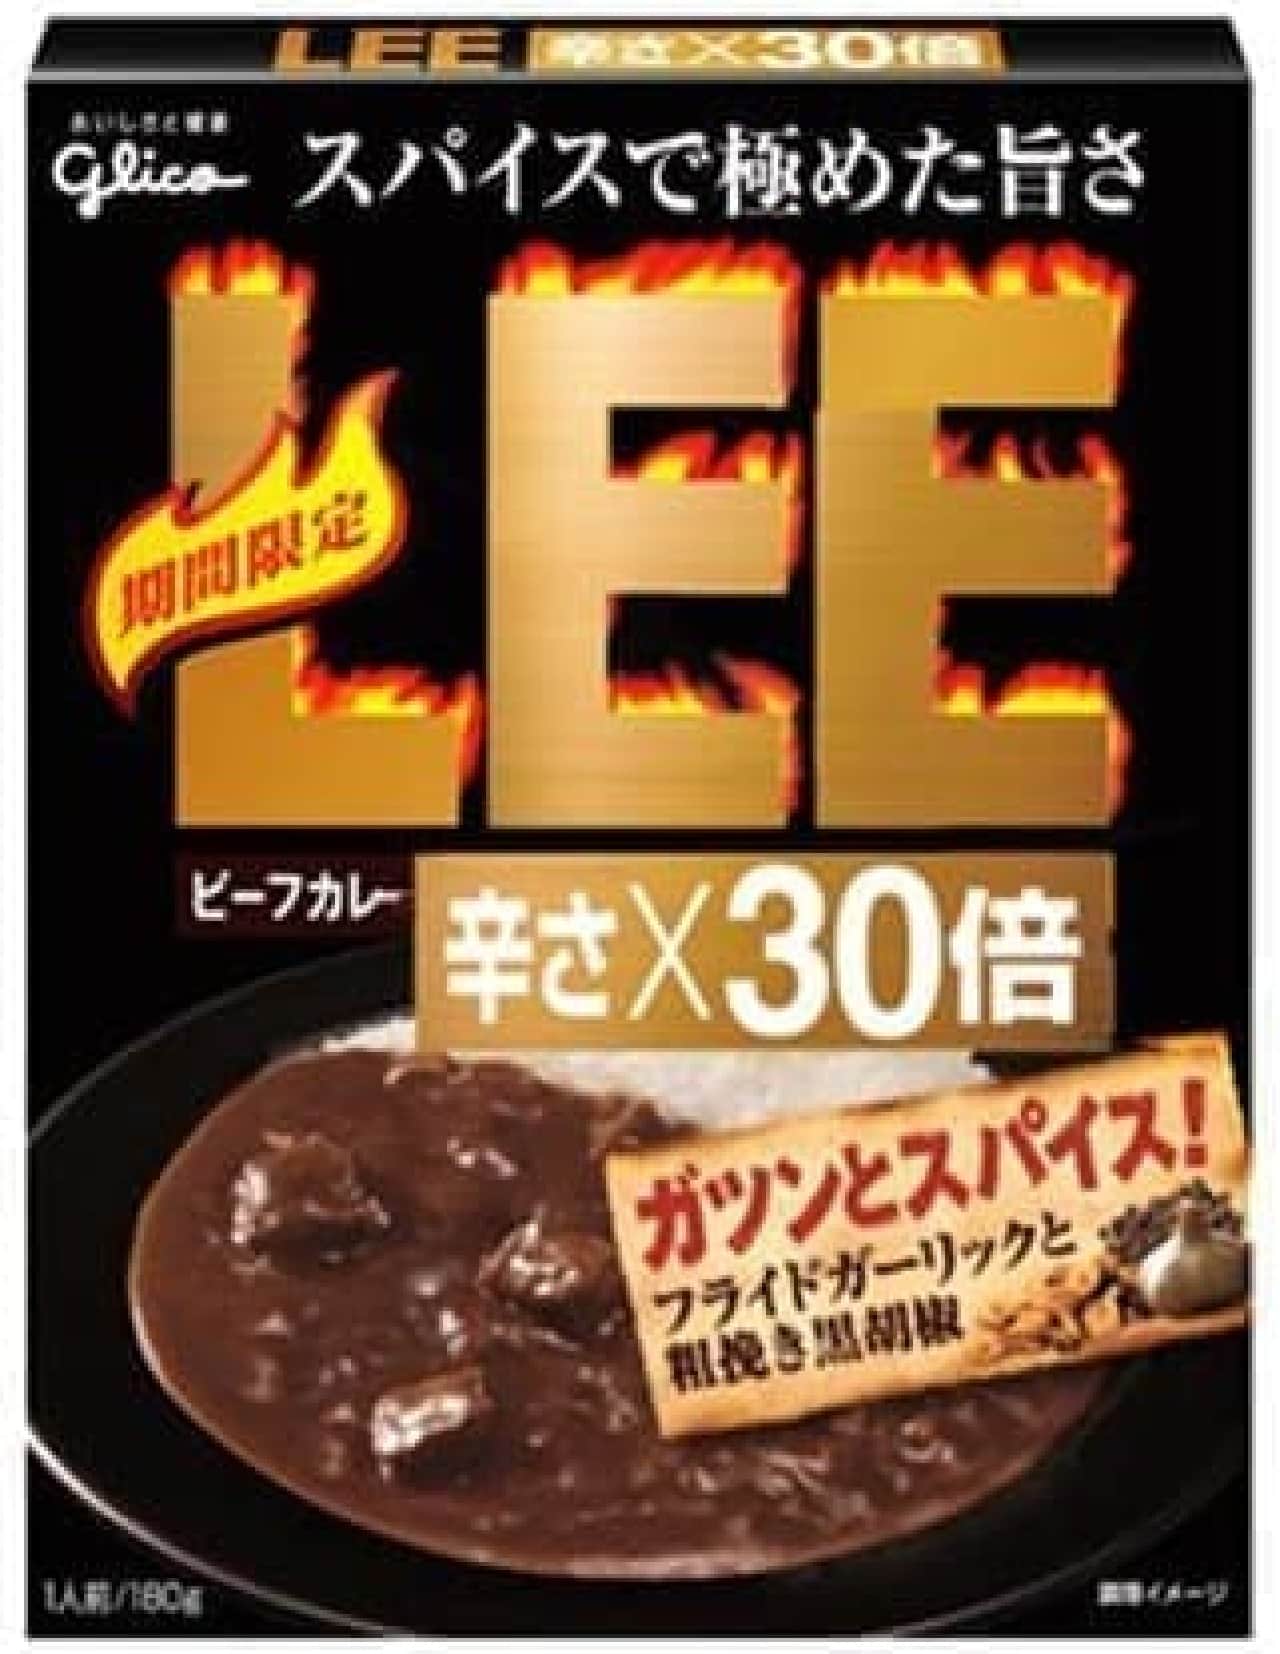 Ezaki Glico "Beef Curry LEE [Spicy x 30 times]" Gatsun and Spice! ""